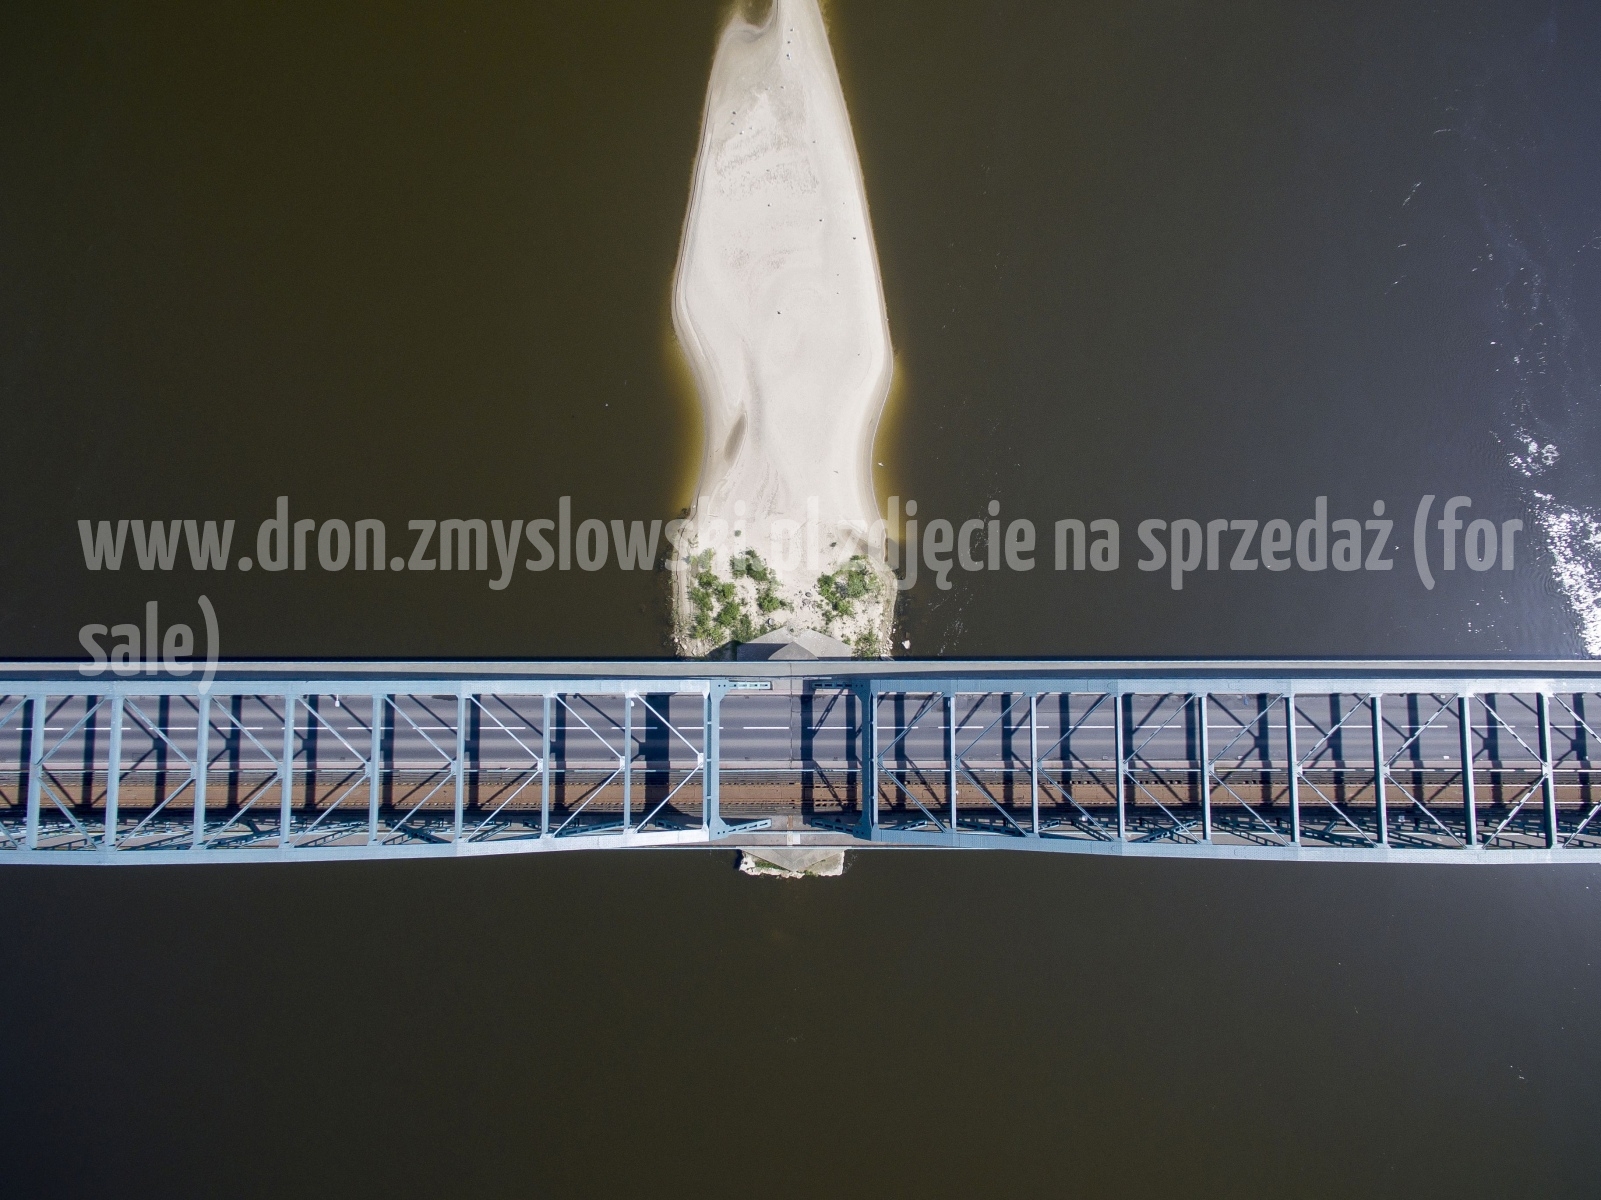 2018-05-03-lot-dronem-w-Bydgoszczy-przy-moscie-na-Wisle_103_wyprostowany_horyzont